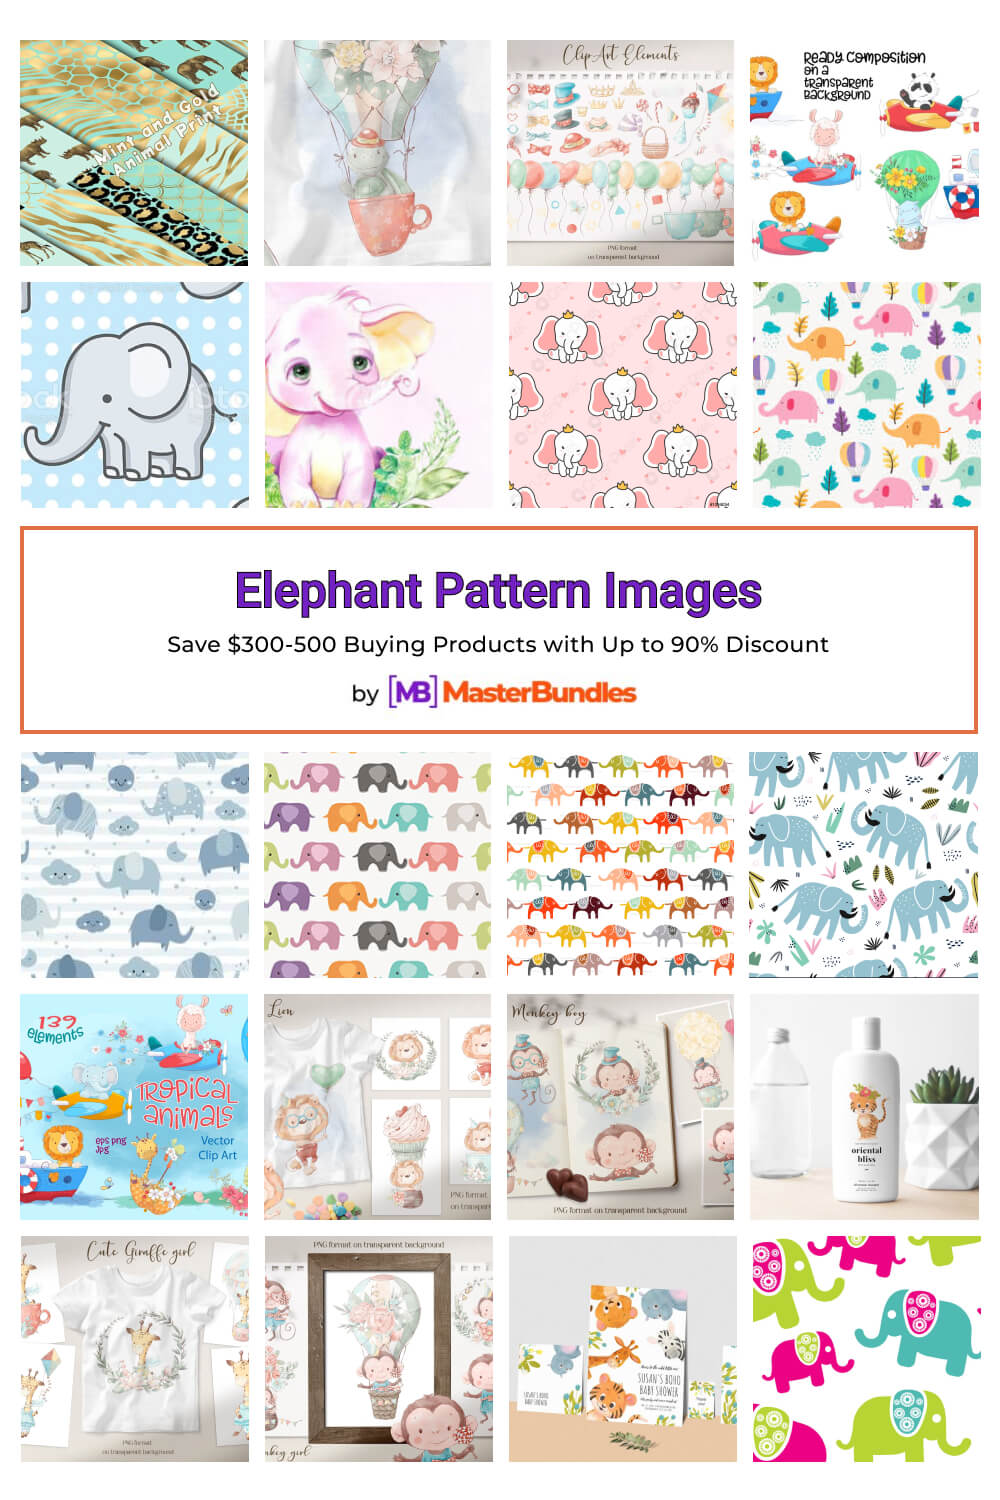 elephant pattern images pinterest image.